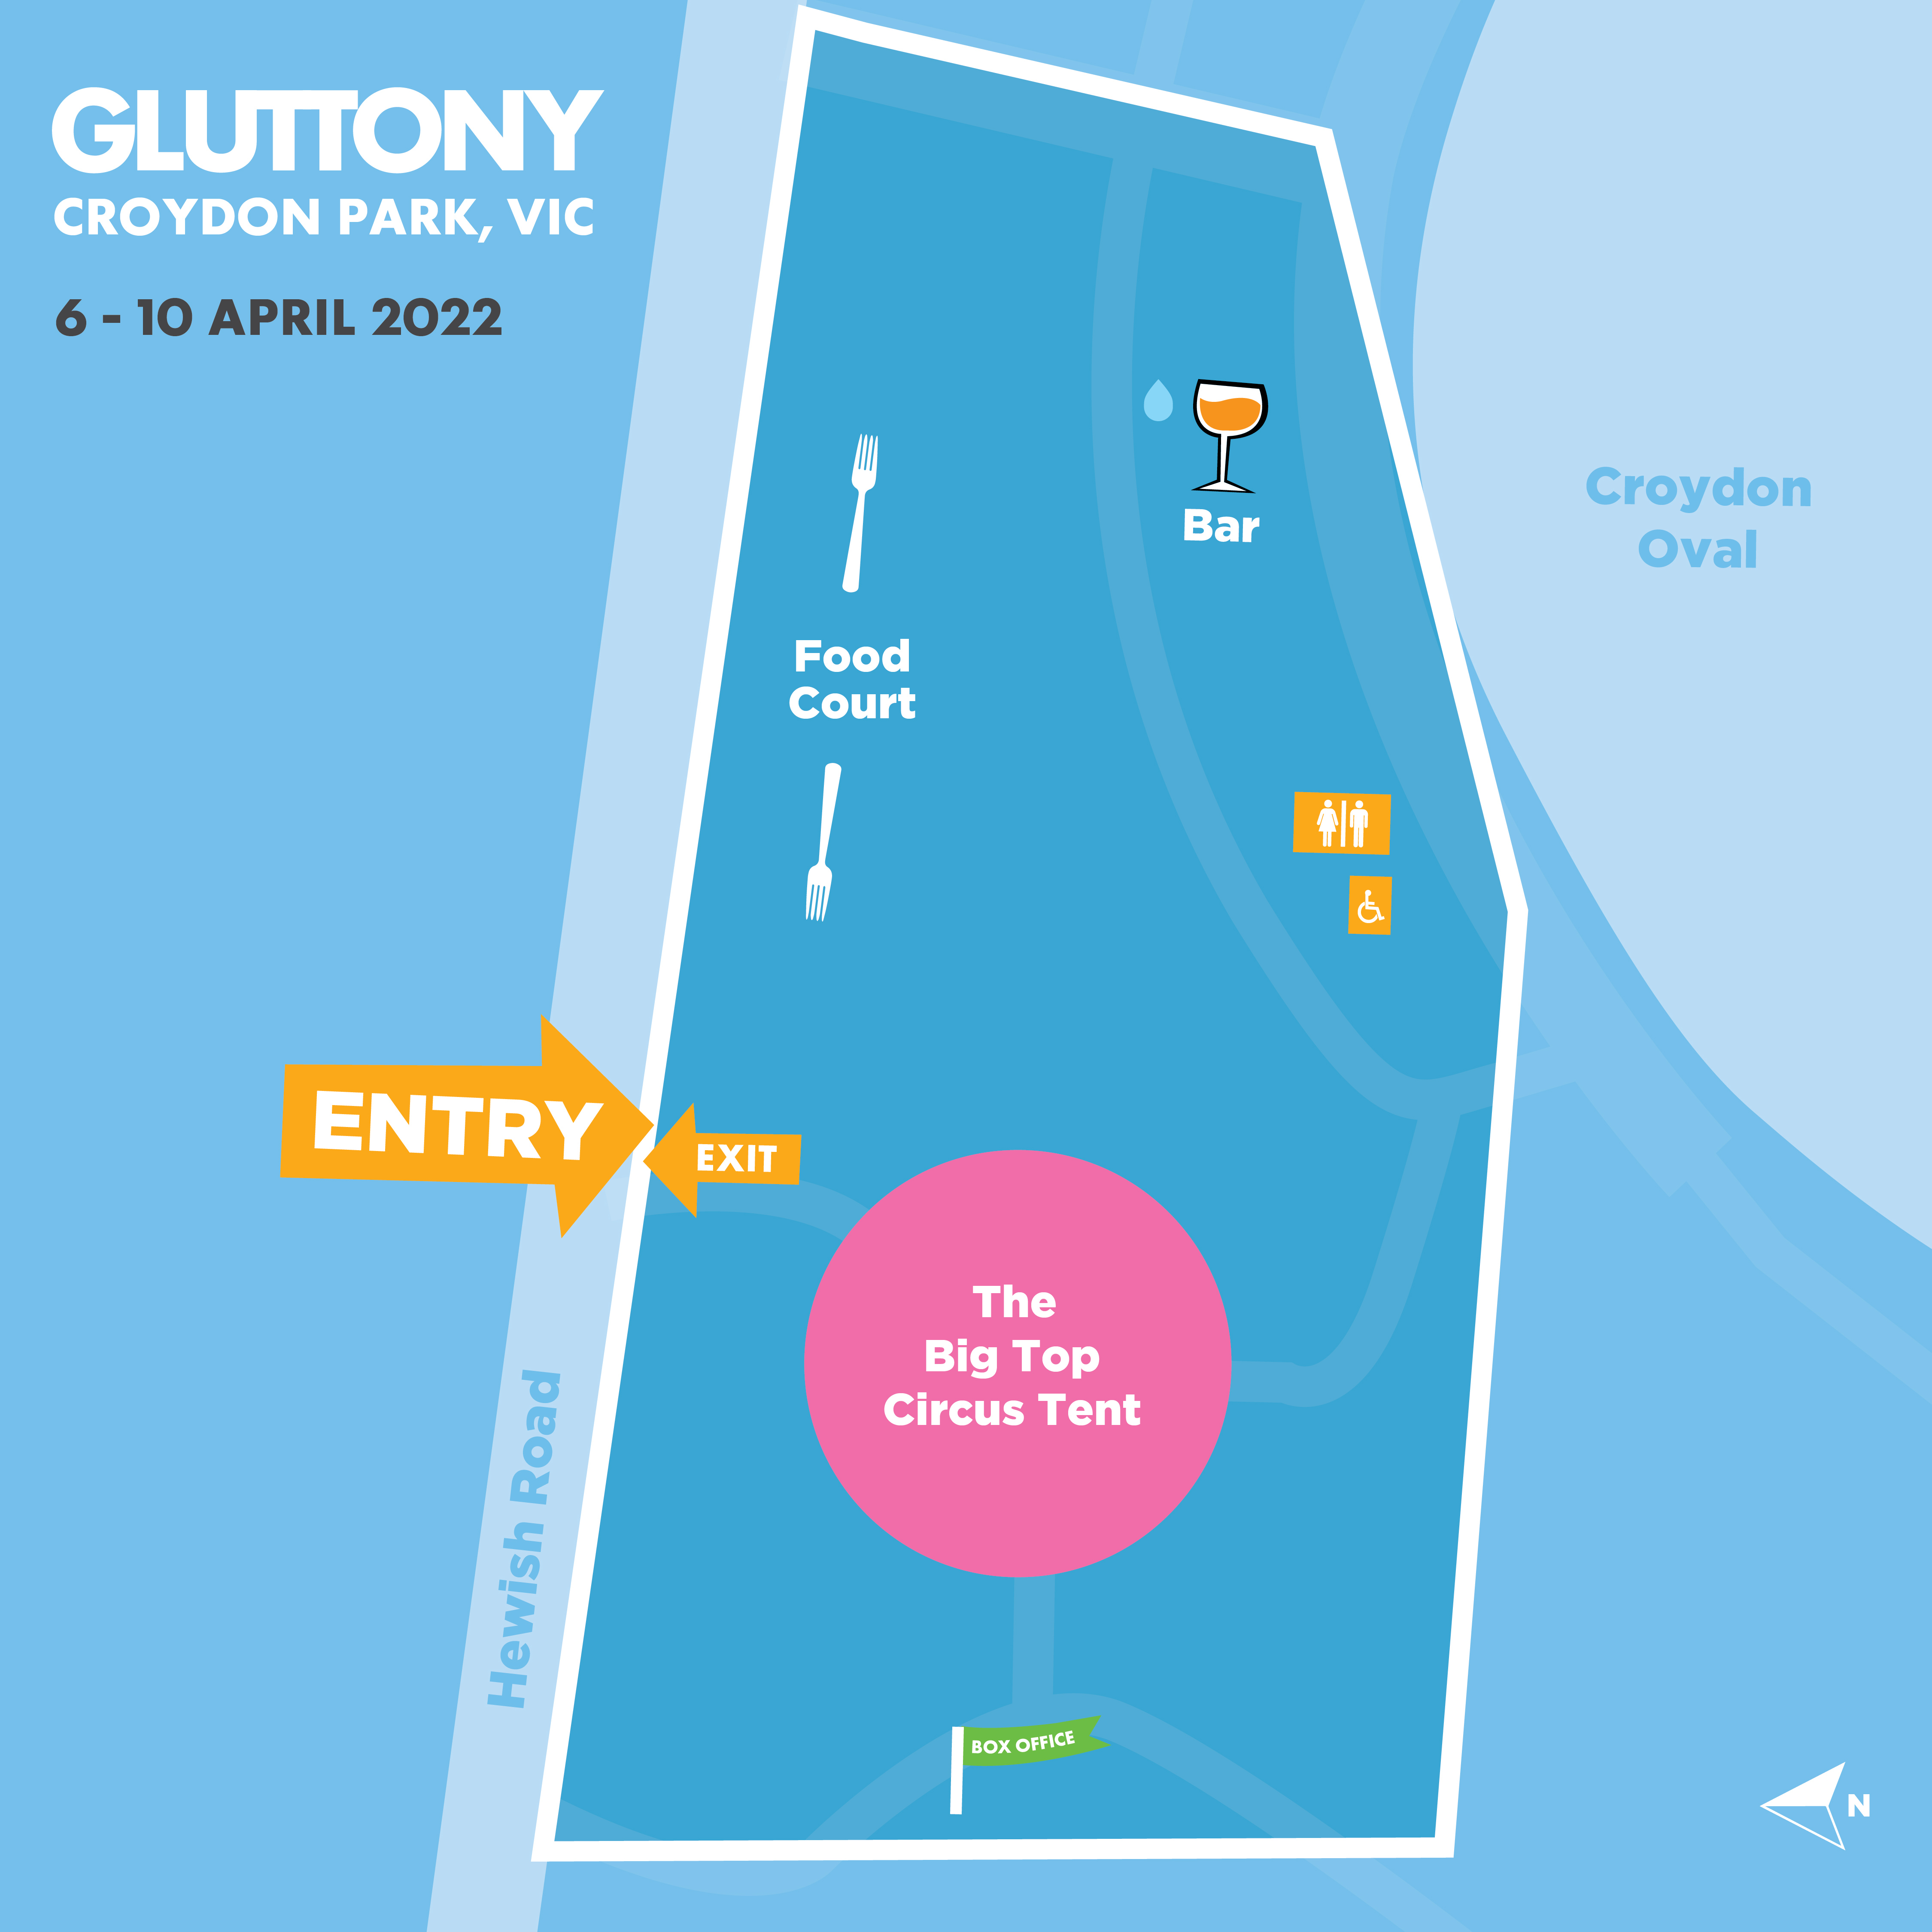 Gluttony Croydon Park Map.jpg